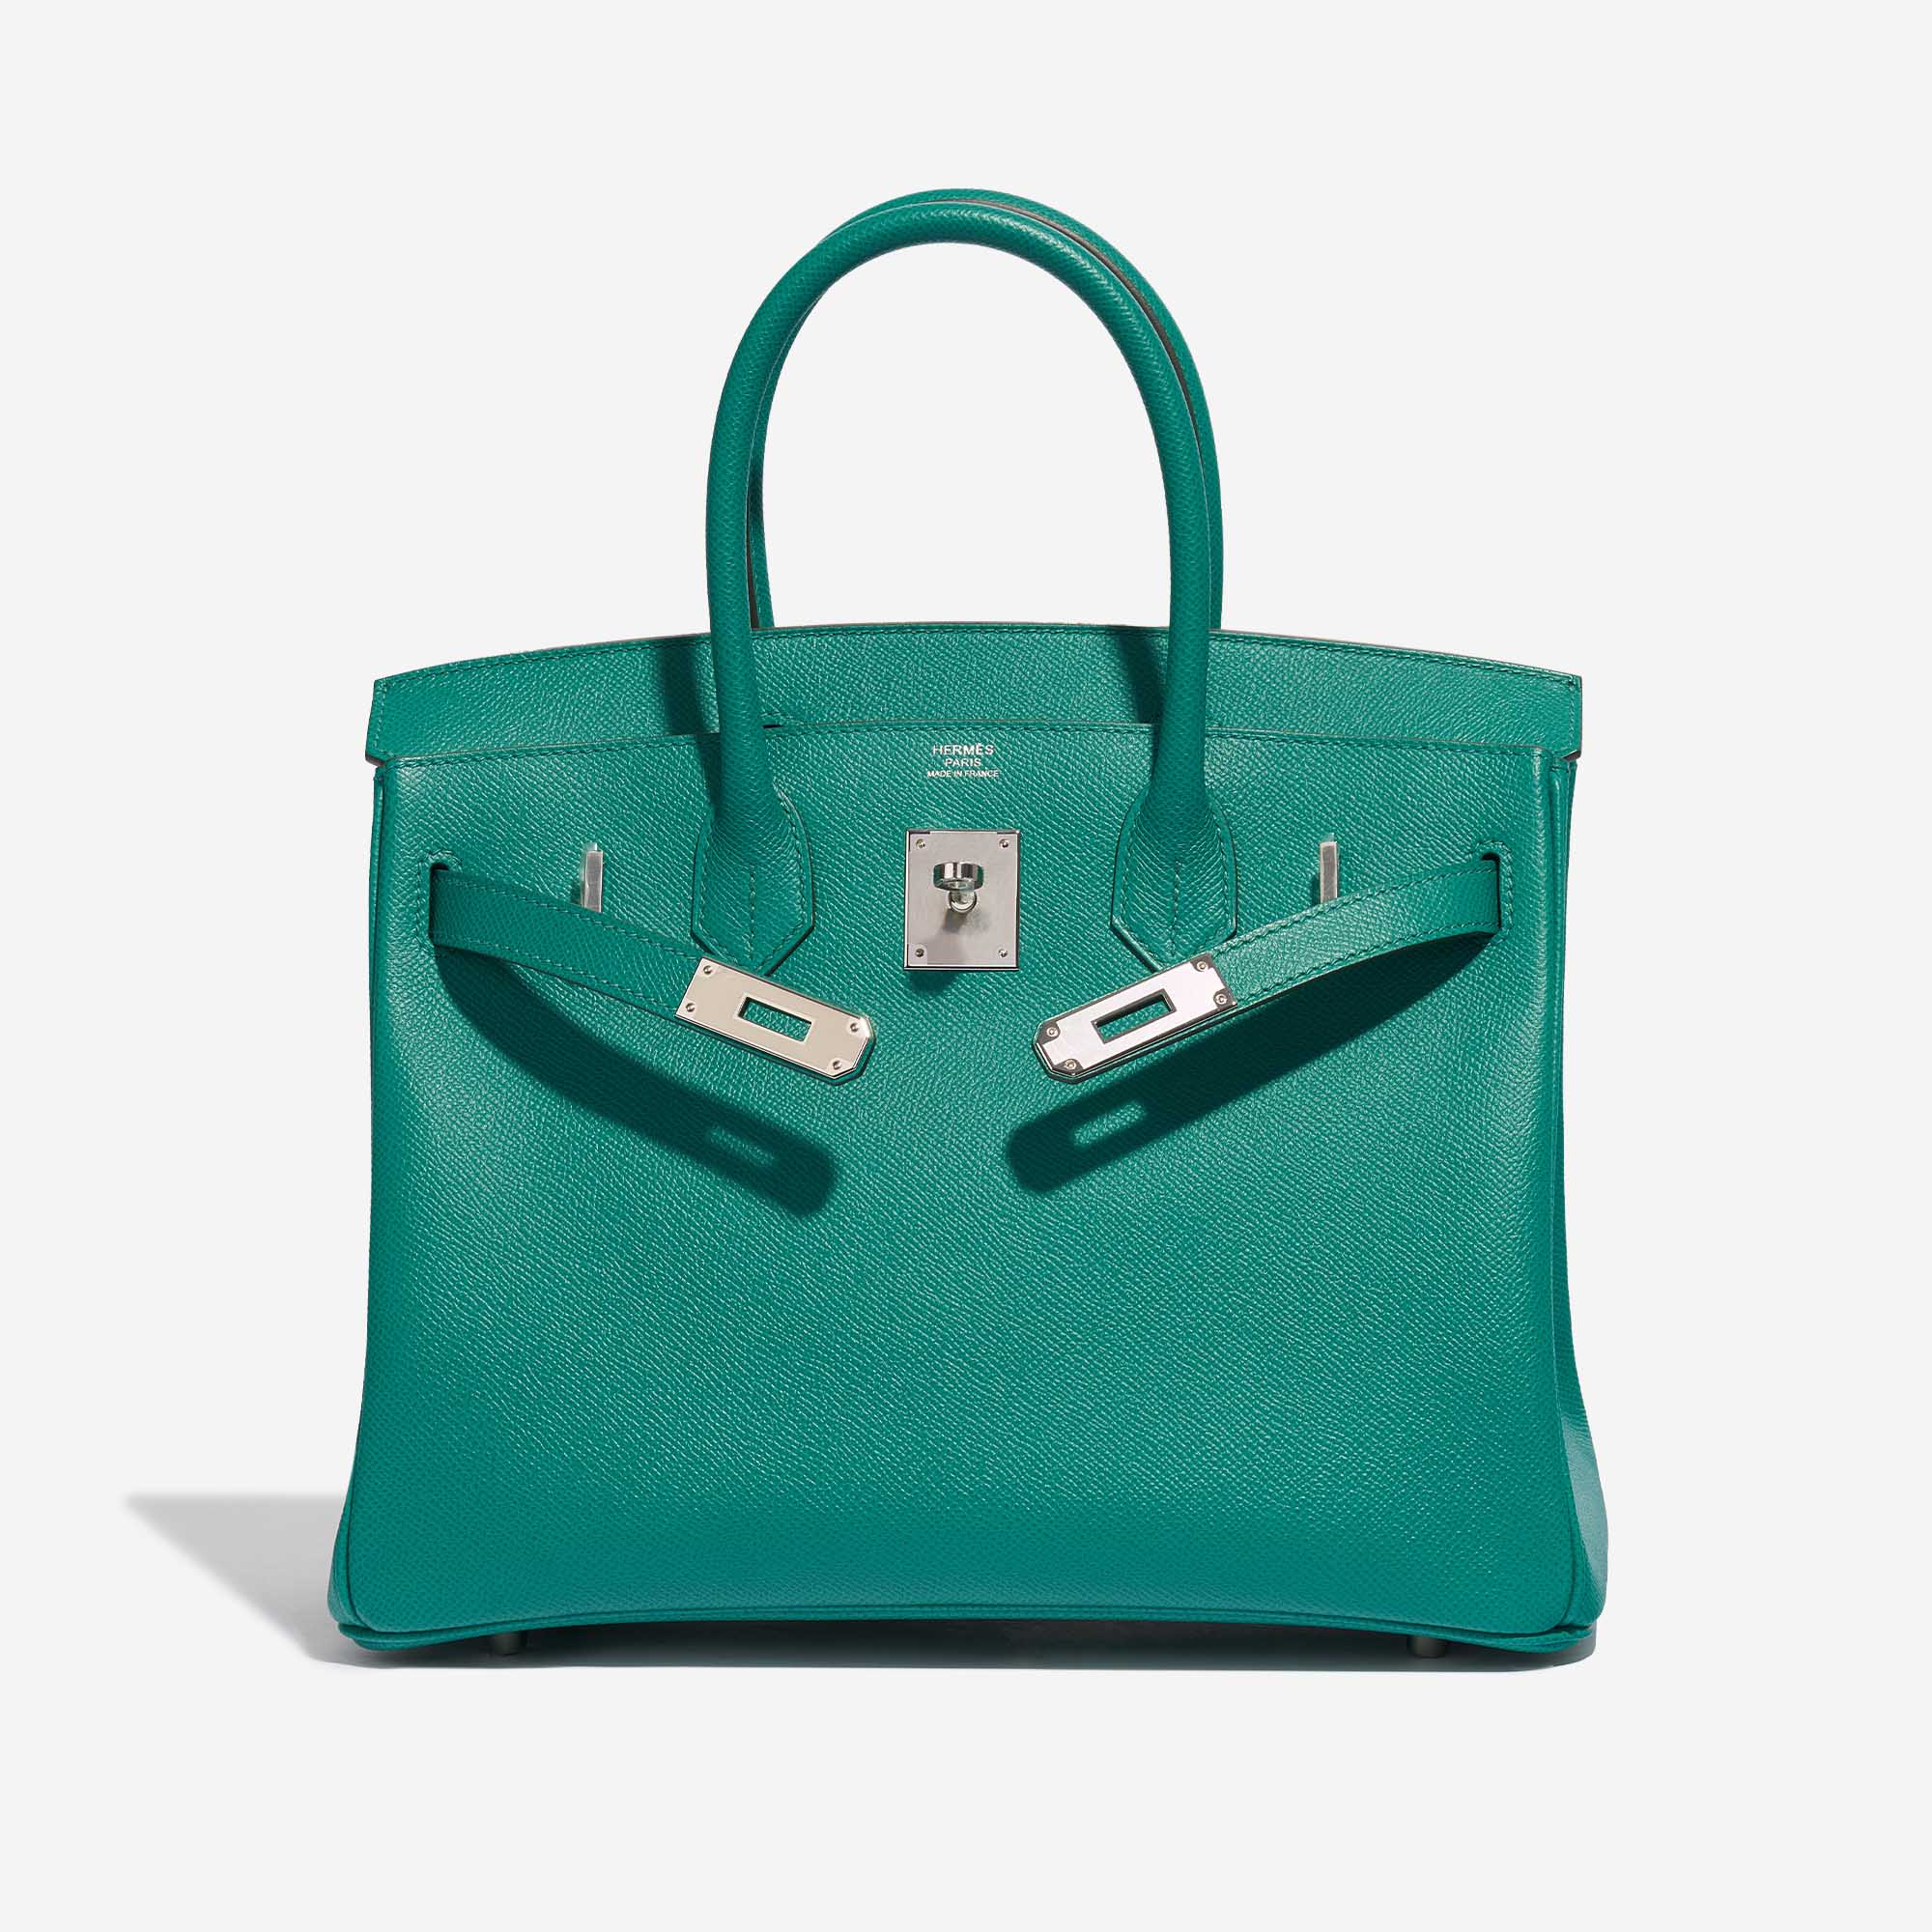 Sac Hermès Birkin 30 Epsom Vert Jade Green Front Open | Vendez votre sac de créateur sur Saclab.com